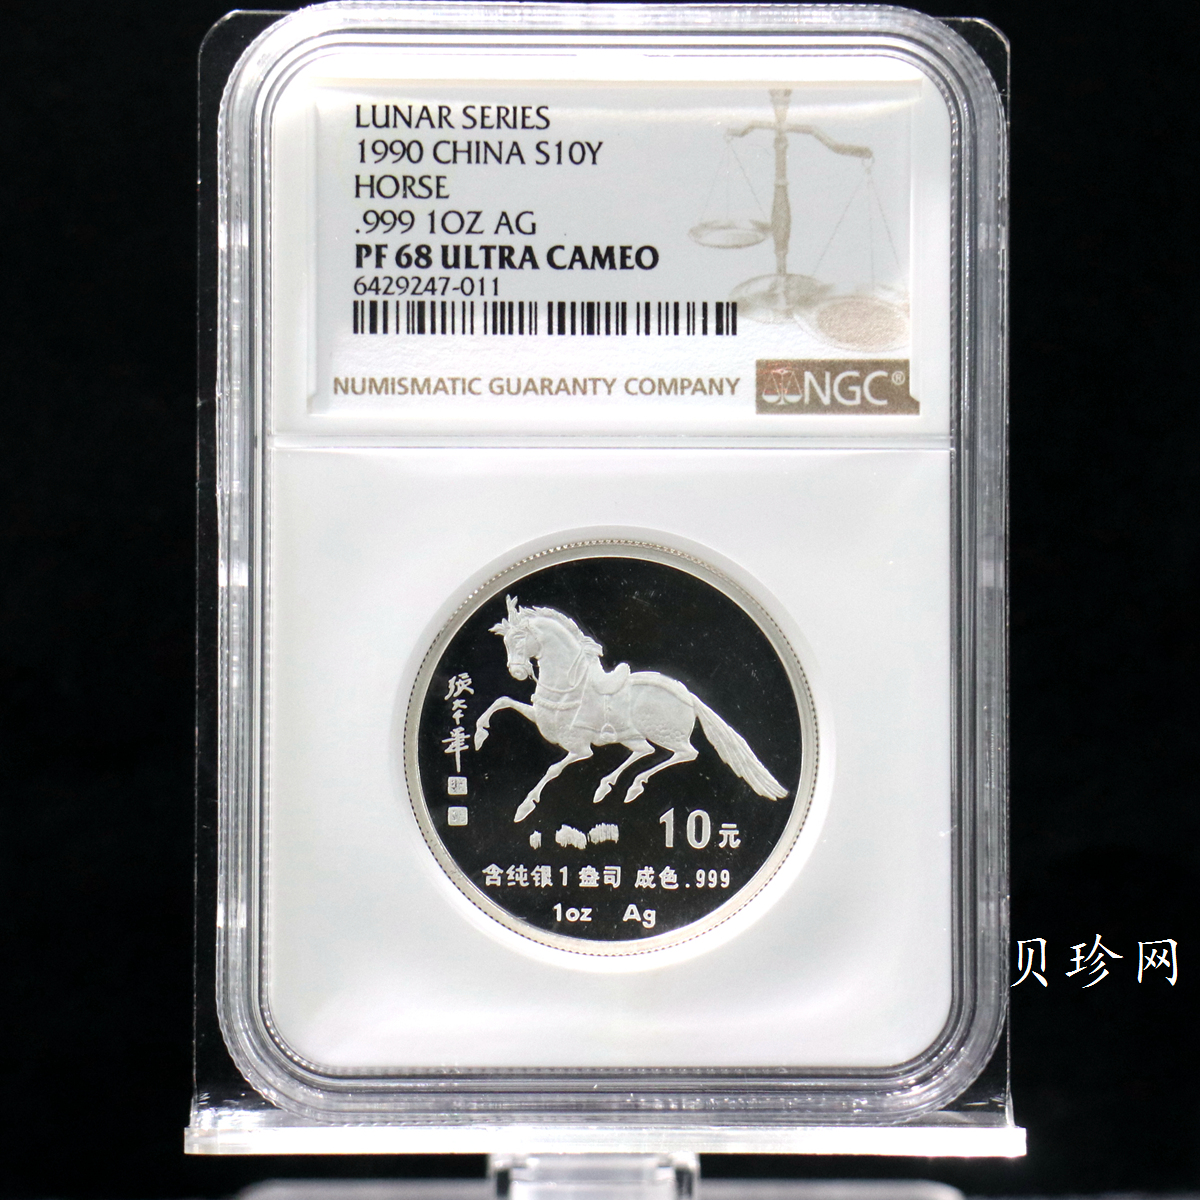 【900207】1990中国庚午（马）年金银铂纪念币-张大千《唐马图》1盎司精制银币